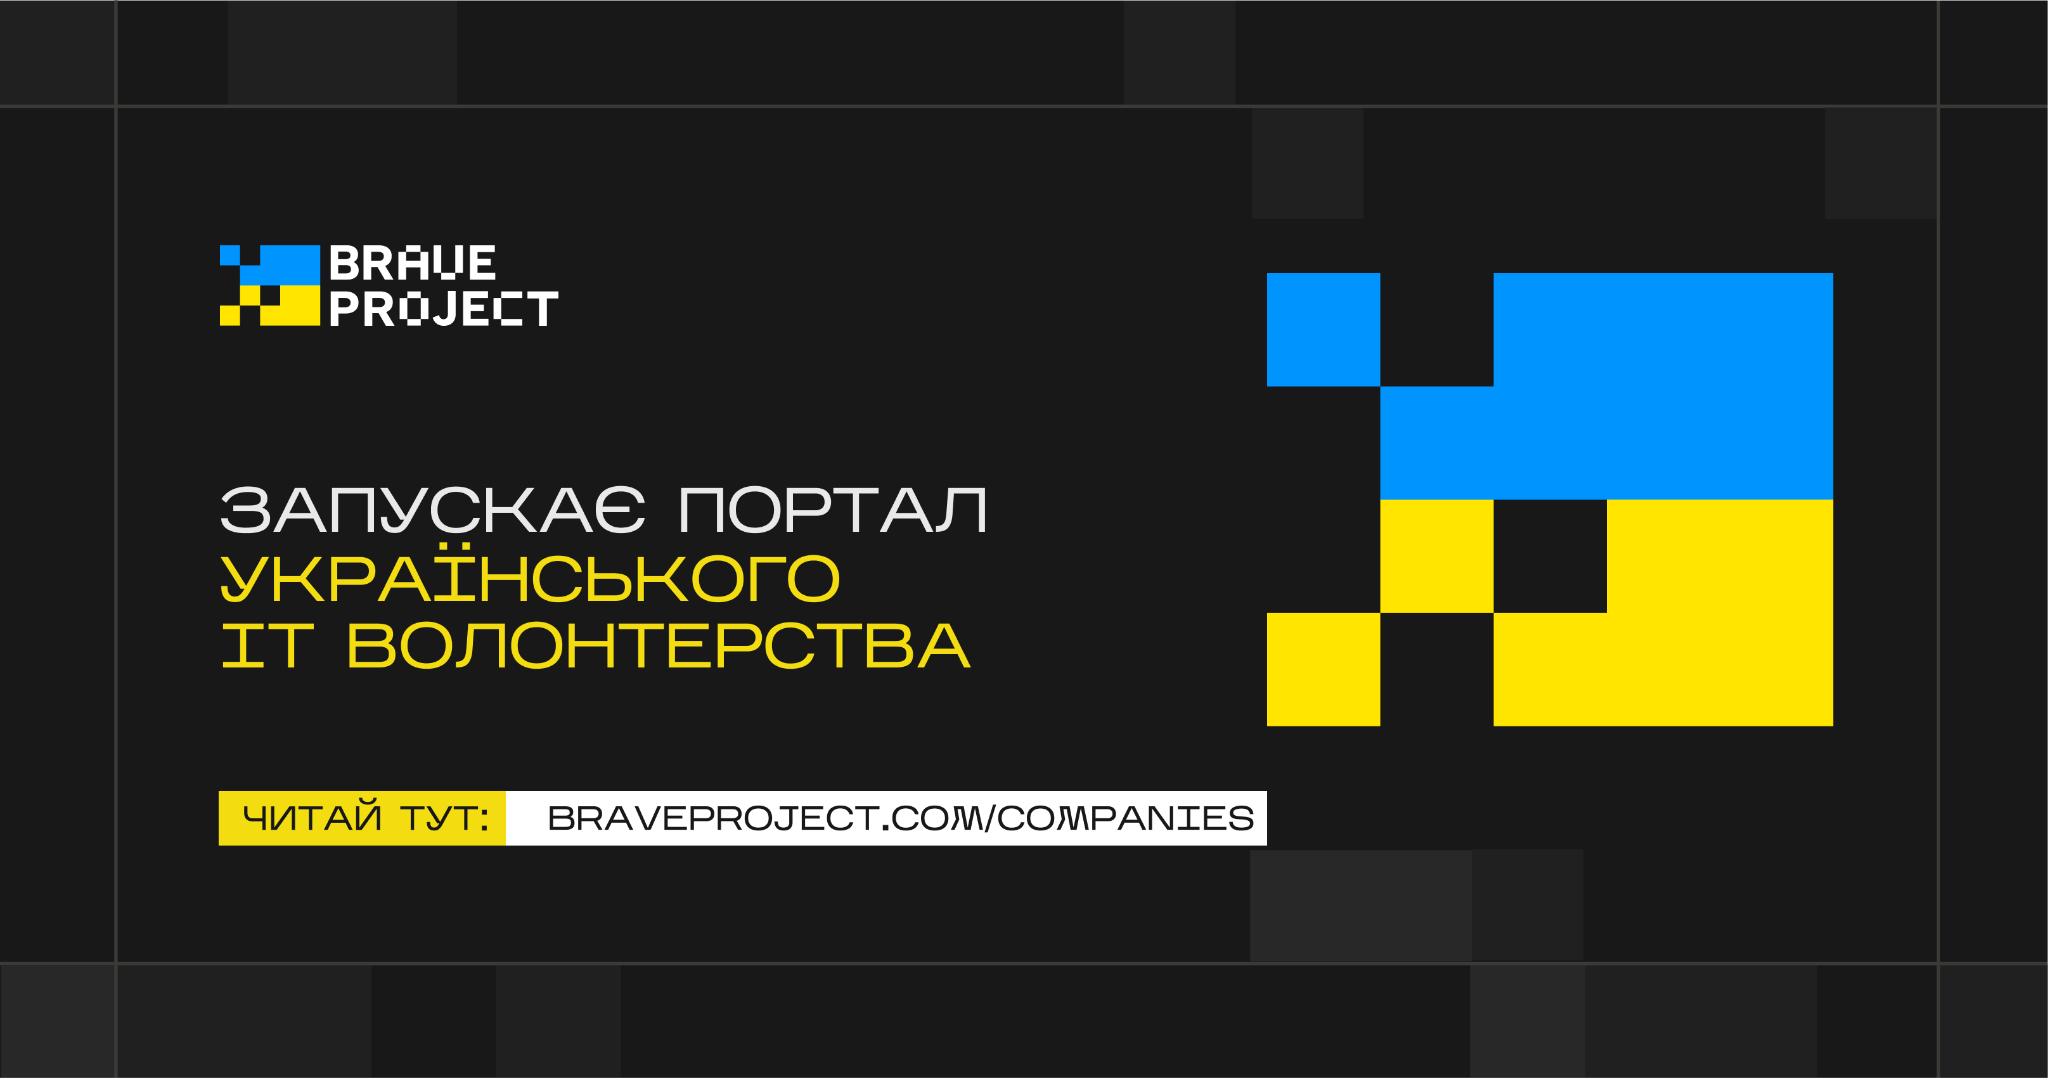 Una vuelta de tuerca a la página web del millón de dólares. Braveproject lanza un portal ucraniano de voluntariado informático